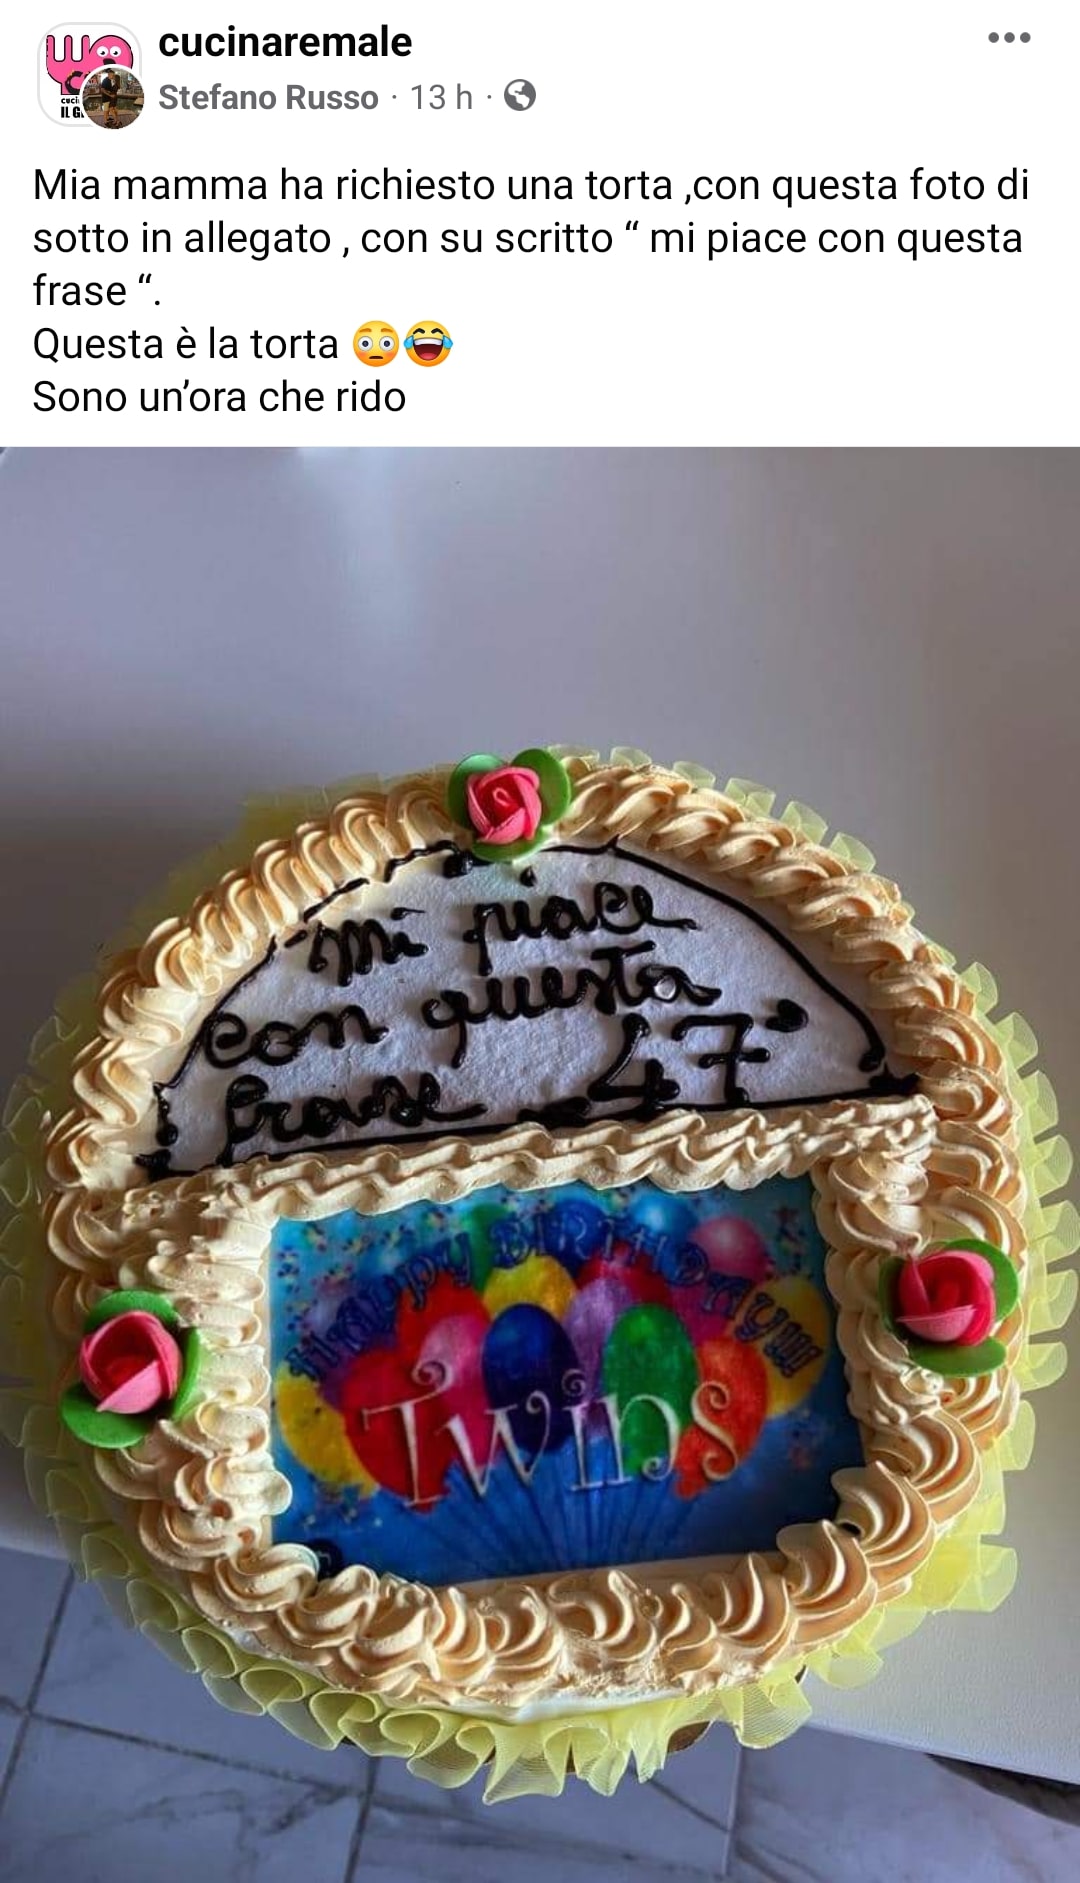 Ordinano una torta personalizzata e dicono al pasticciere: "Mi piace questa frase", l